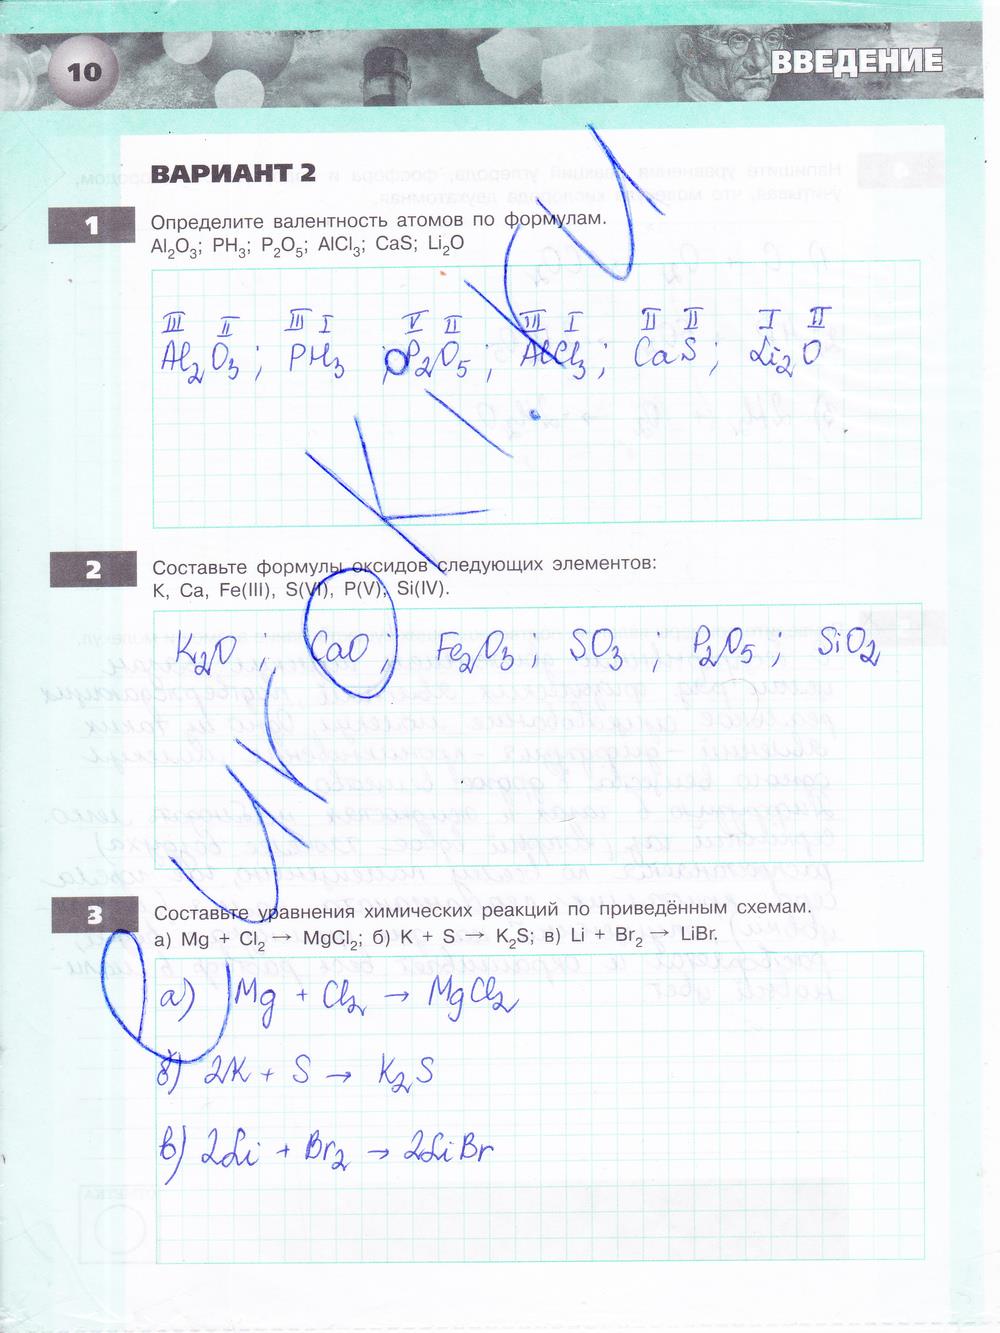 гдз 8 класс тетрадь-экзаменатор страница 10 химия Бобылева, Бирюлина